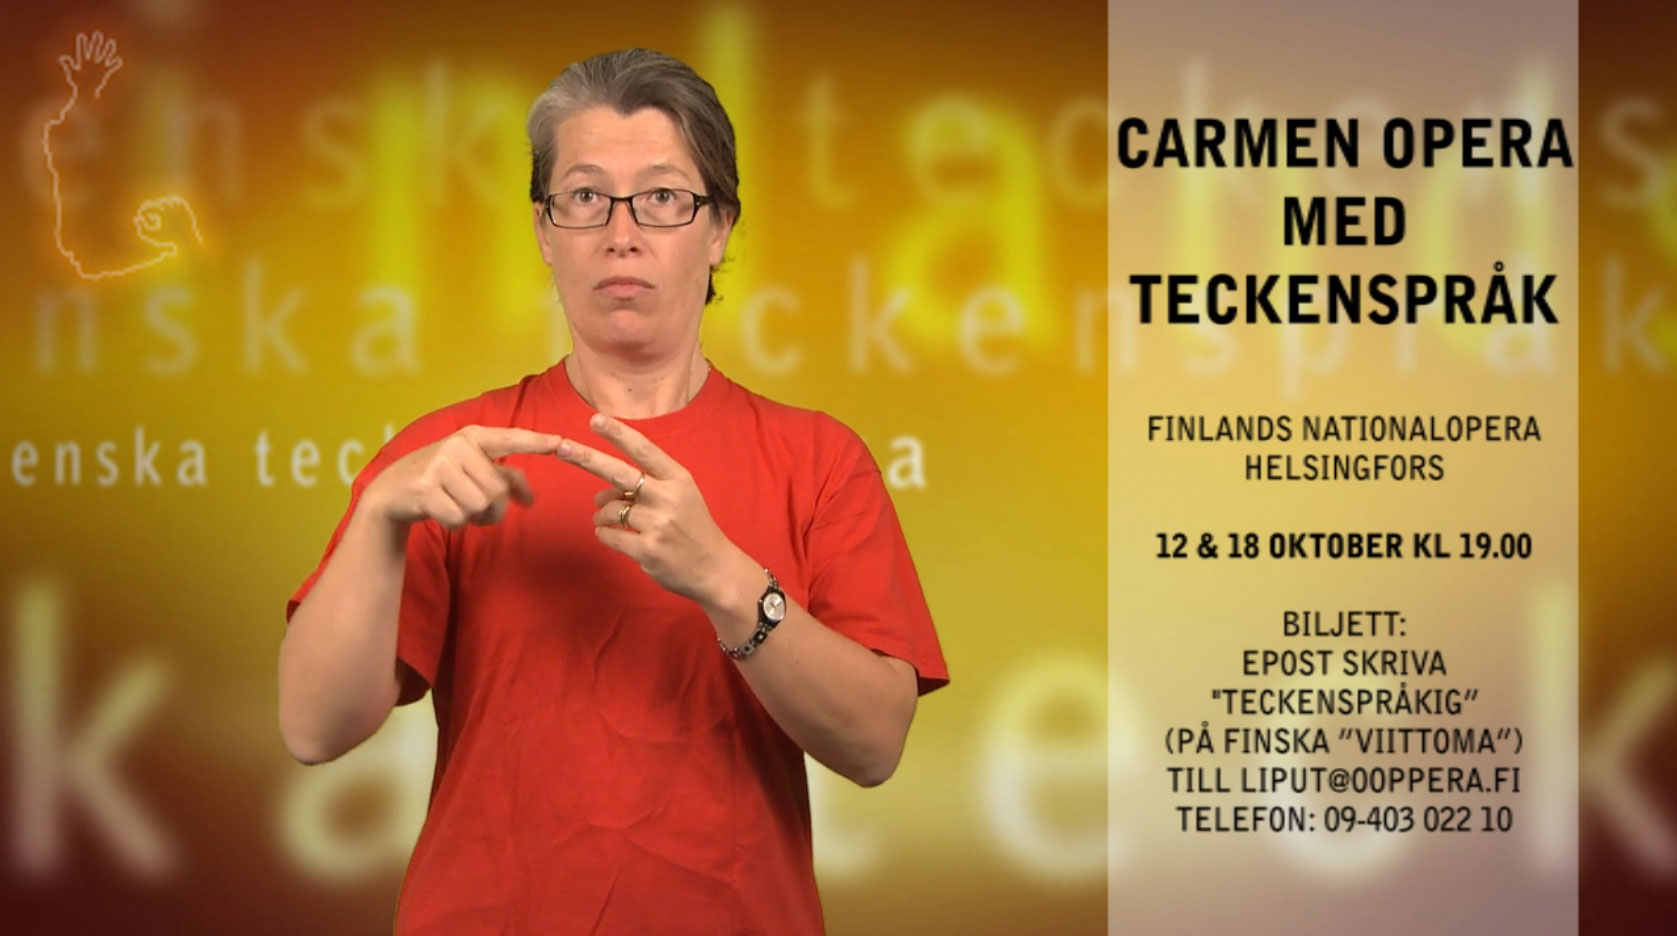 Carmen opera med teckenspråk